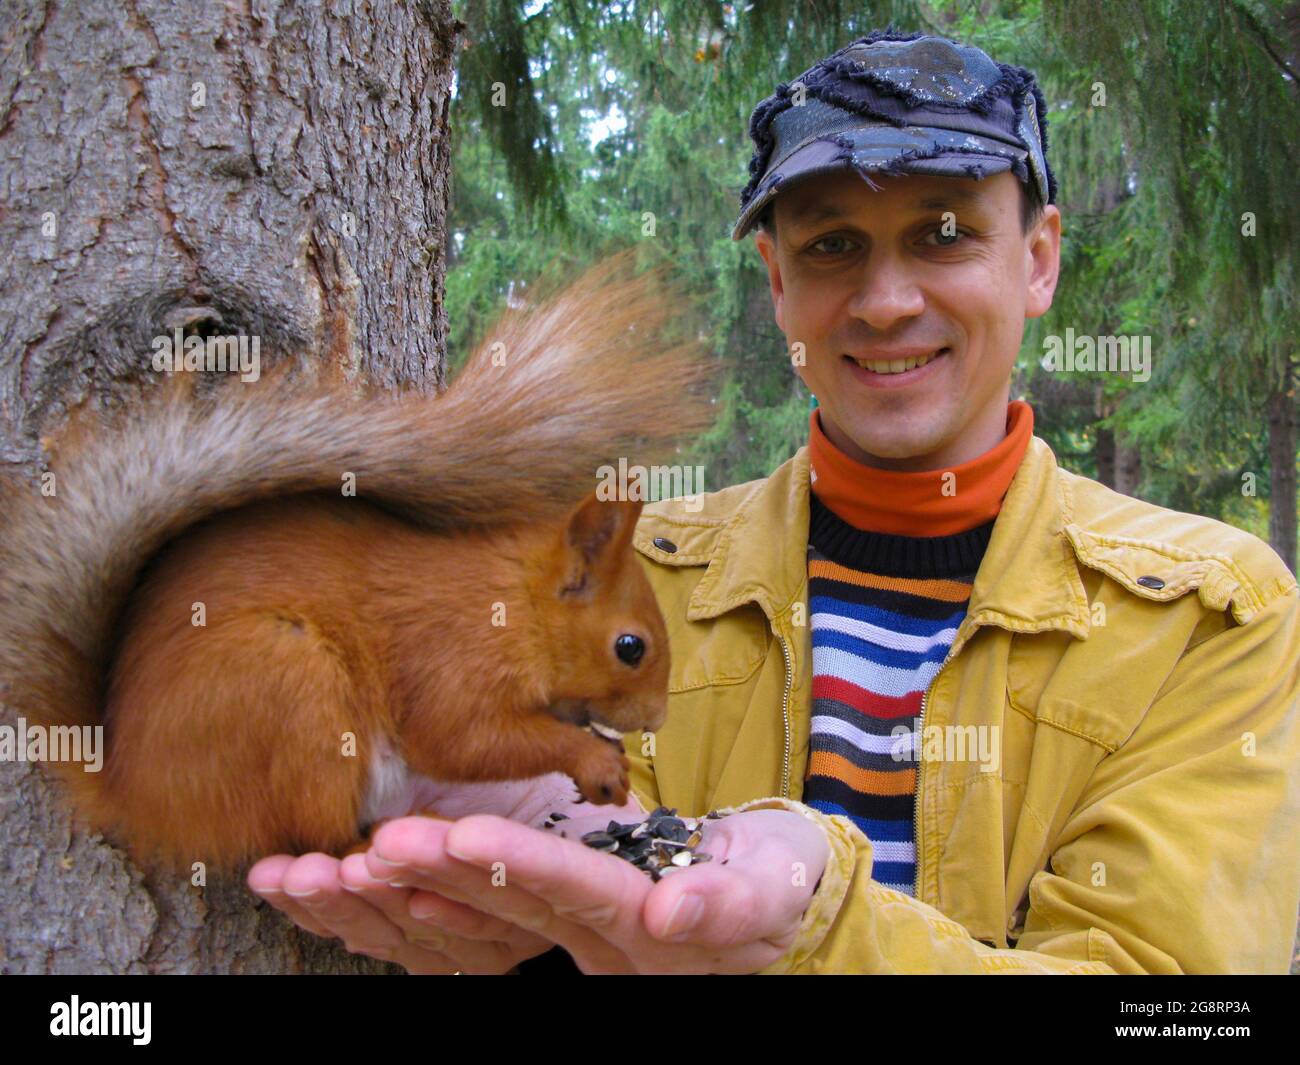 Un homme avec un écureuil dans ses bras se tient près d'un arbre. Le concept d'écologie et de protection de l'environnement. Banque D'Images